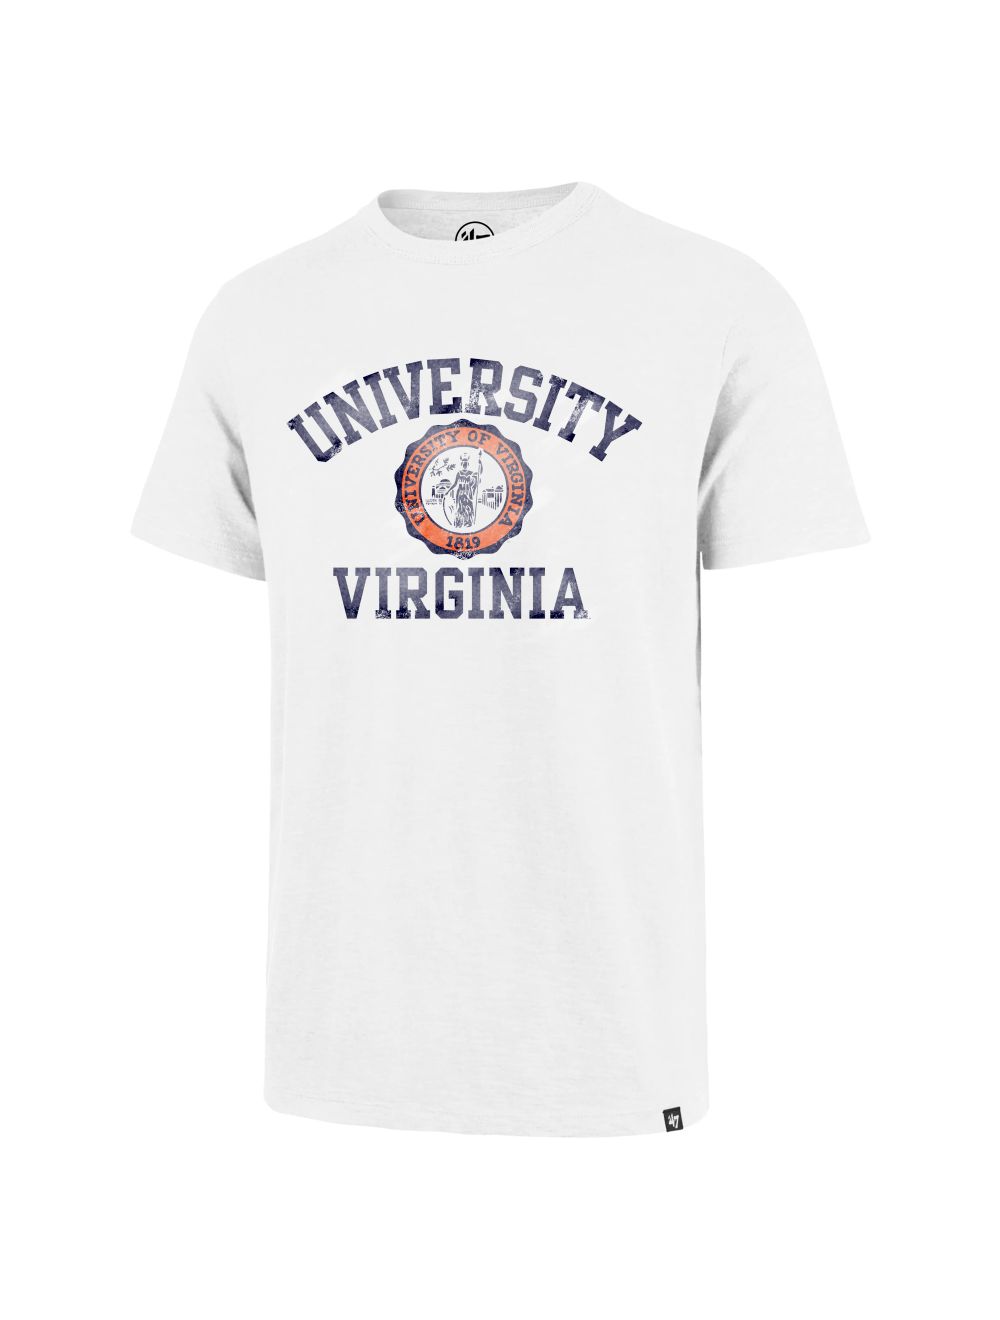 47 Brand / Men's Atlanta Braves White Scrum T-Shirt